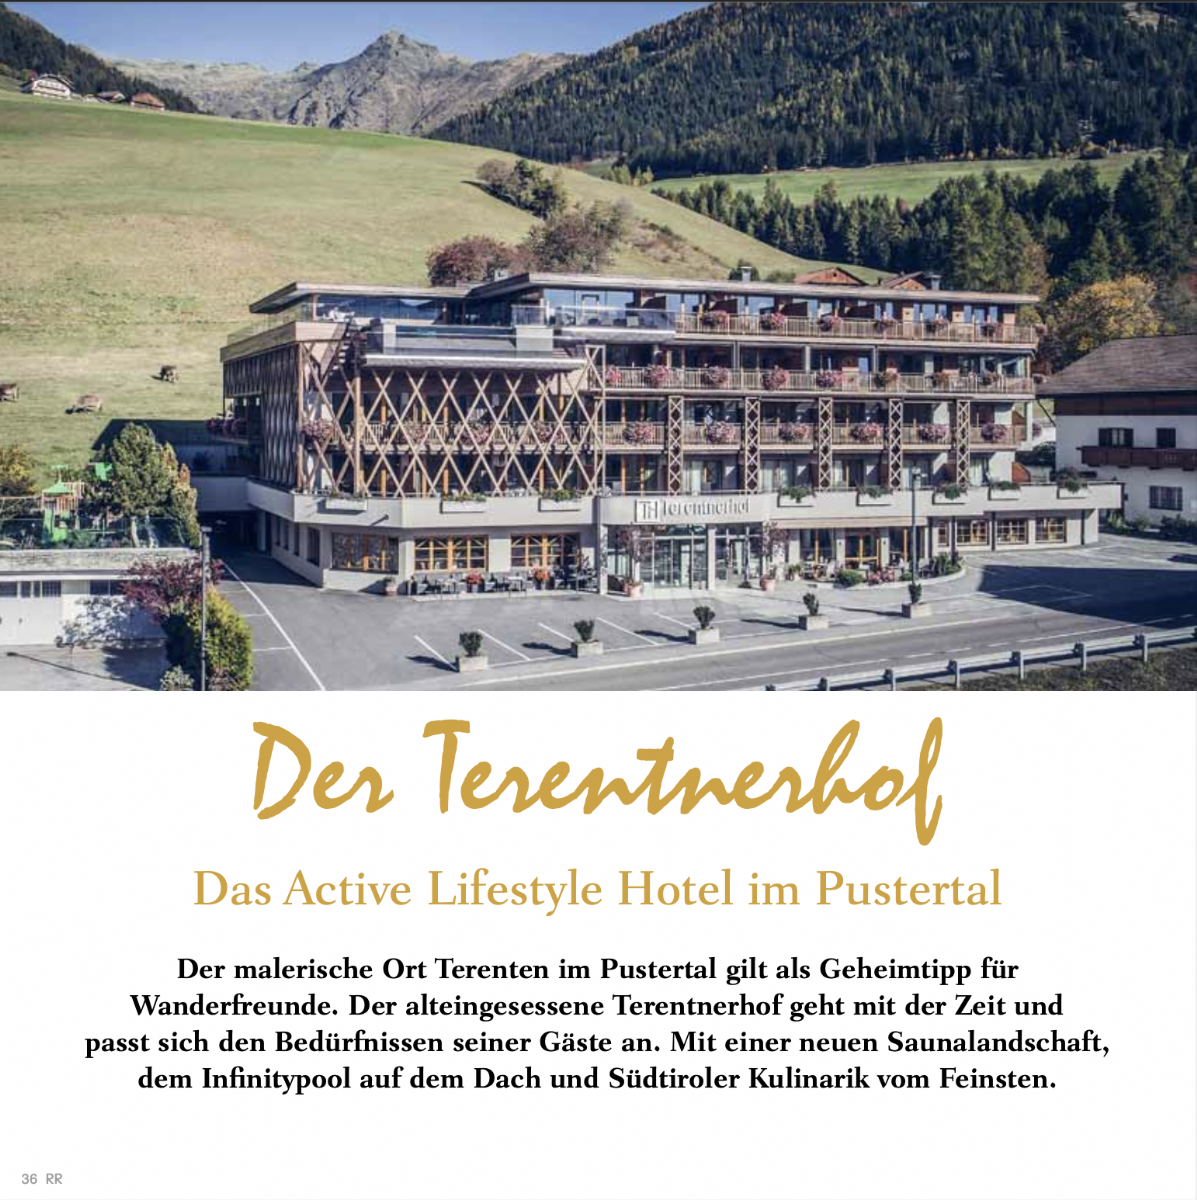 Pustertal: Lifestylehotel Terentnerhof